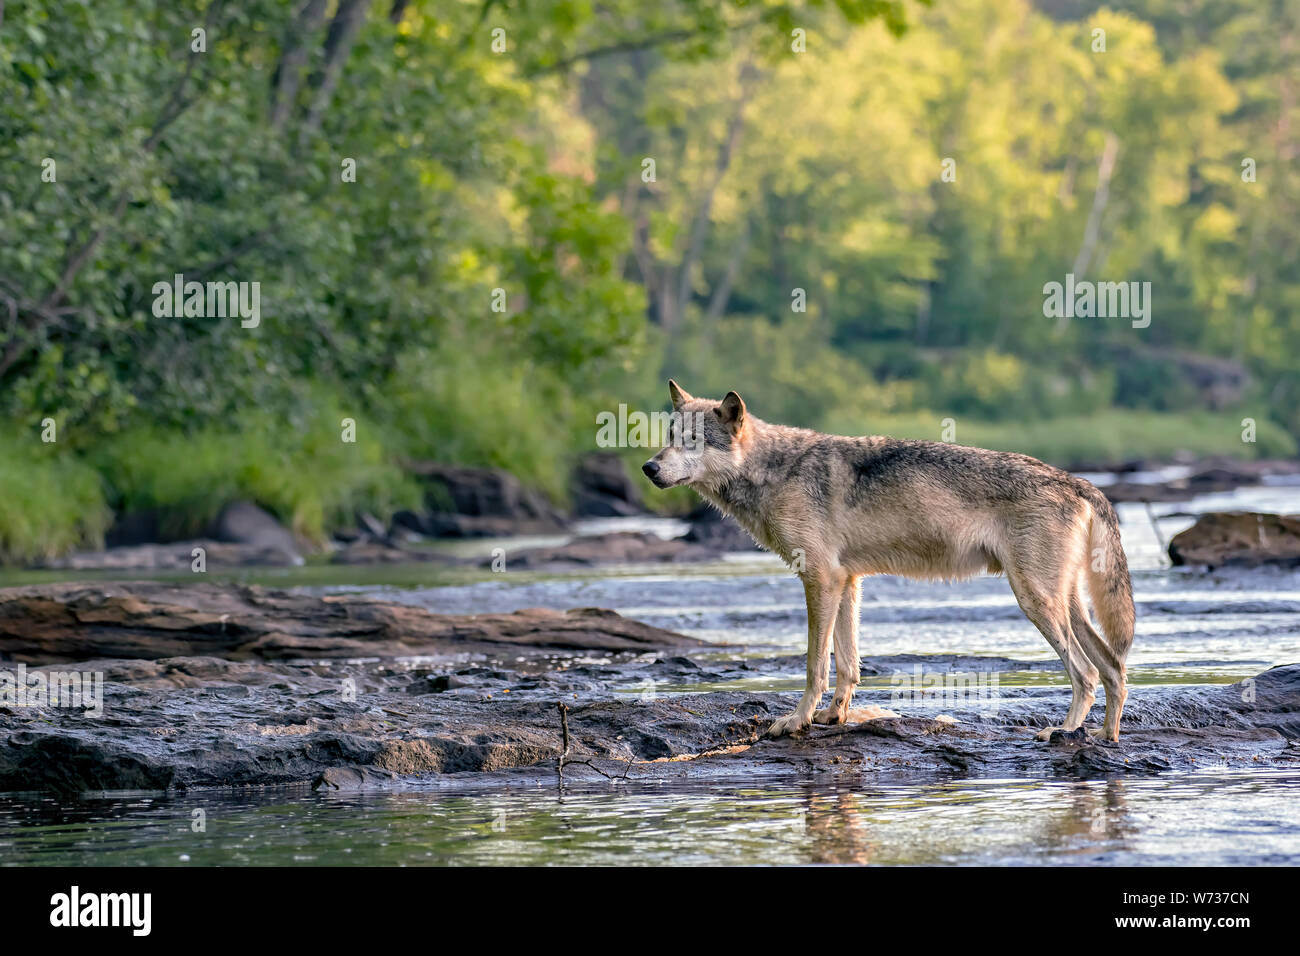 Grey Wolf walking across Rocks in a Flowing River Stock Photo